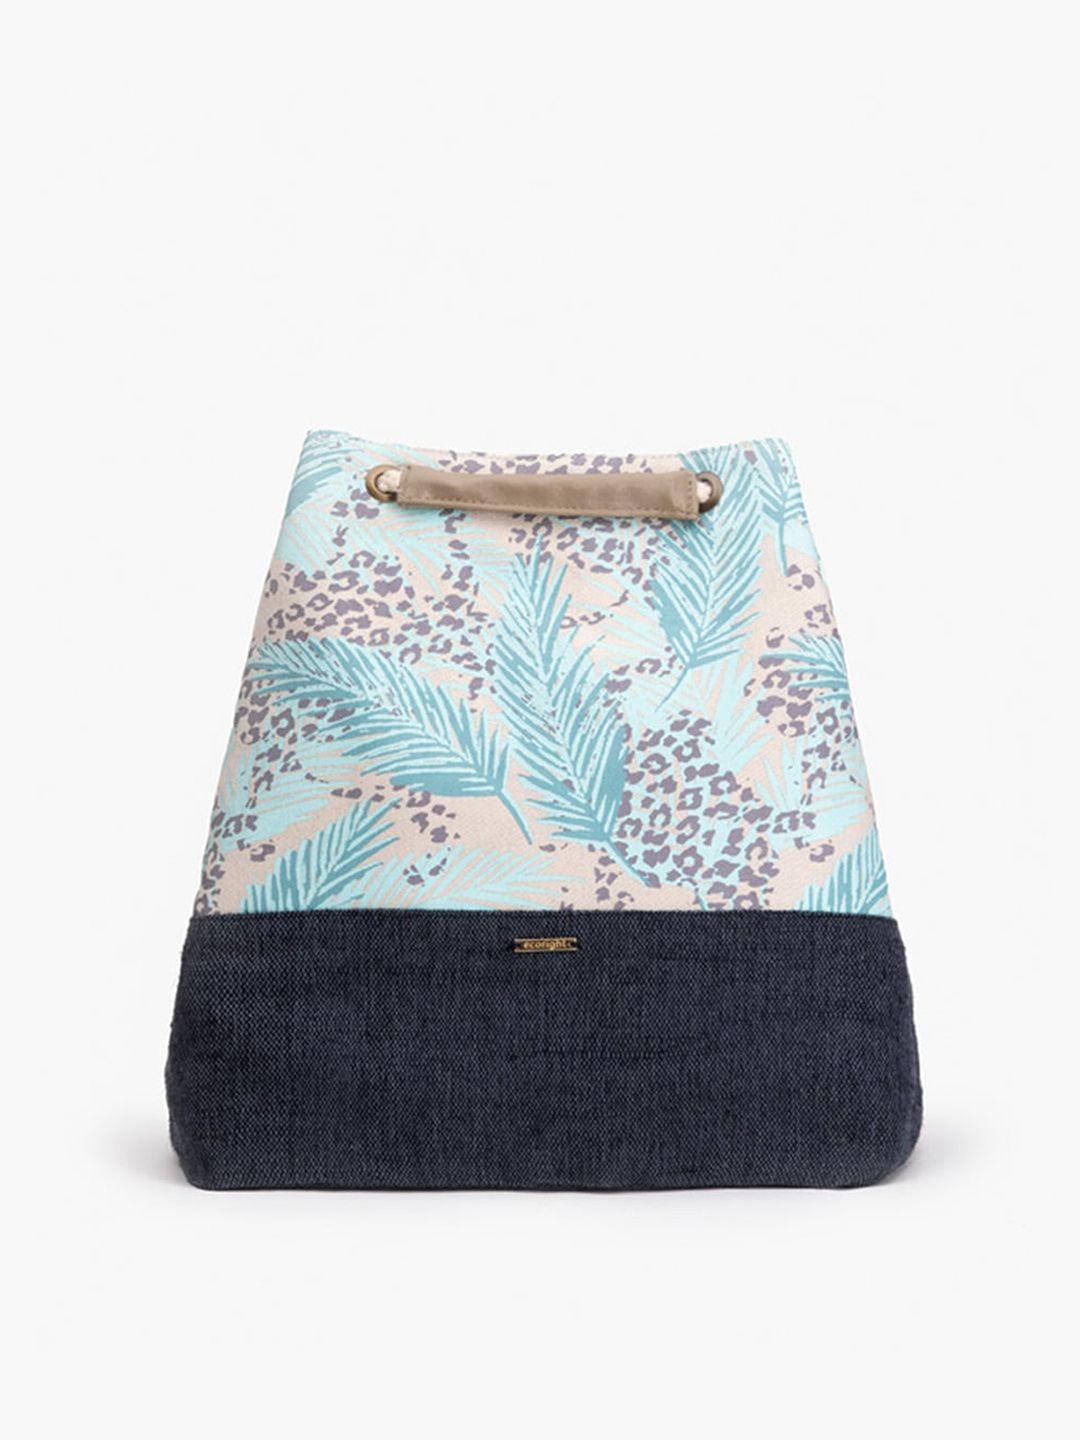 ecoright blue floral printed structured shoulder bag